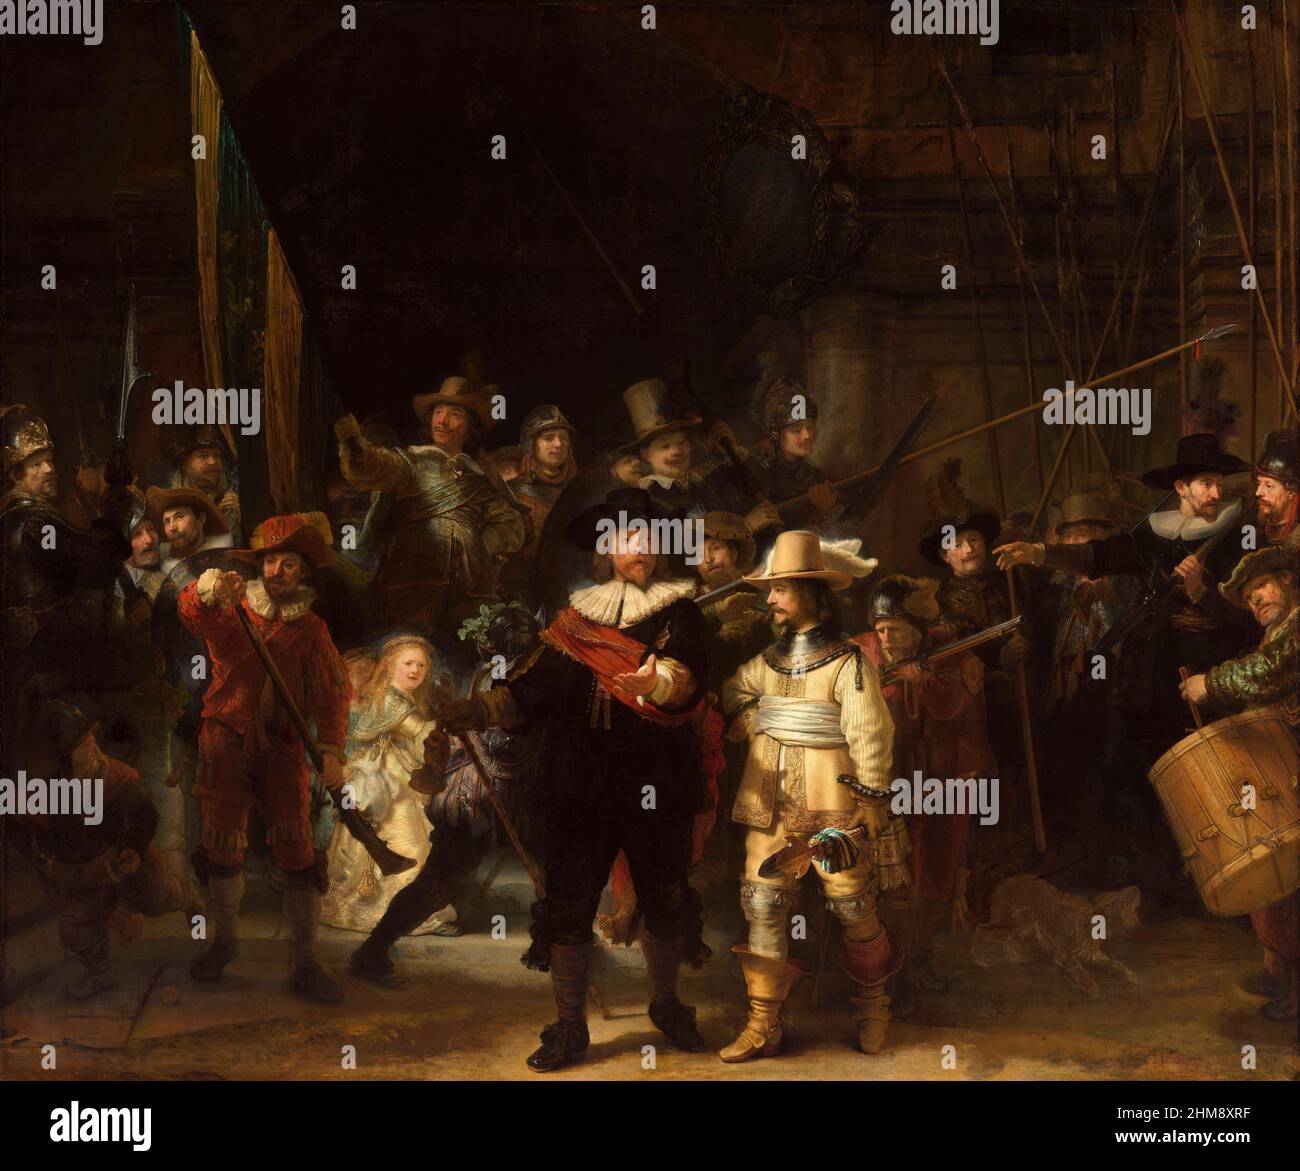 Miliz Company of District II unter dem Kommando von Kapitän Frans Banninck Cocq und Leutnant Willem van Ruytenburch. Das Gemälde ist im Volksmund als "die Nachtwache" bekannt. Von Rembrandt Harmenszoon van Rijn, 1606 - 1669. Ausgestellt im Rijksmuseum, Amsterdam, Niederlande. Stockfoto